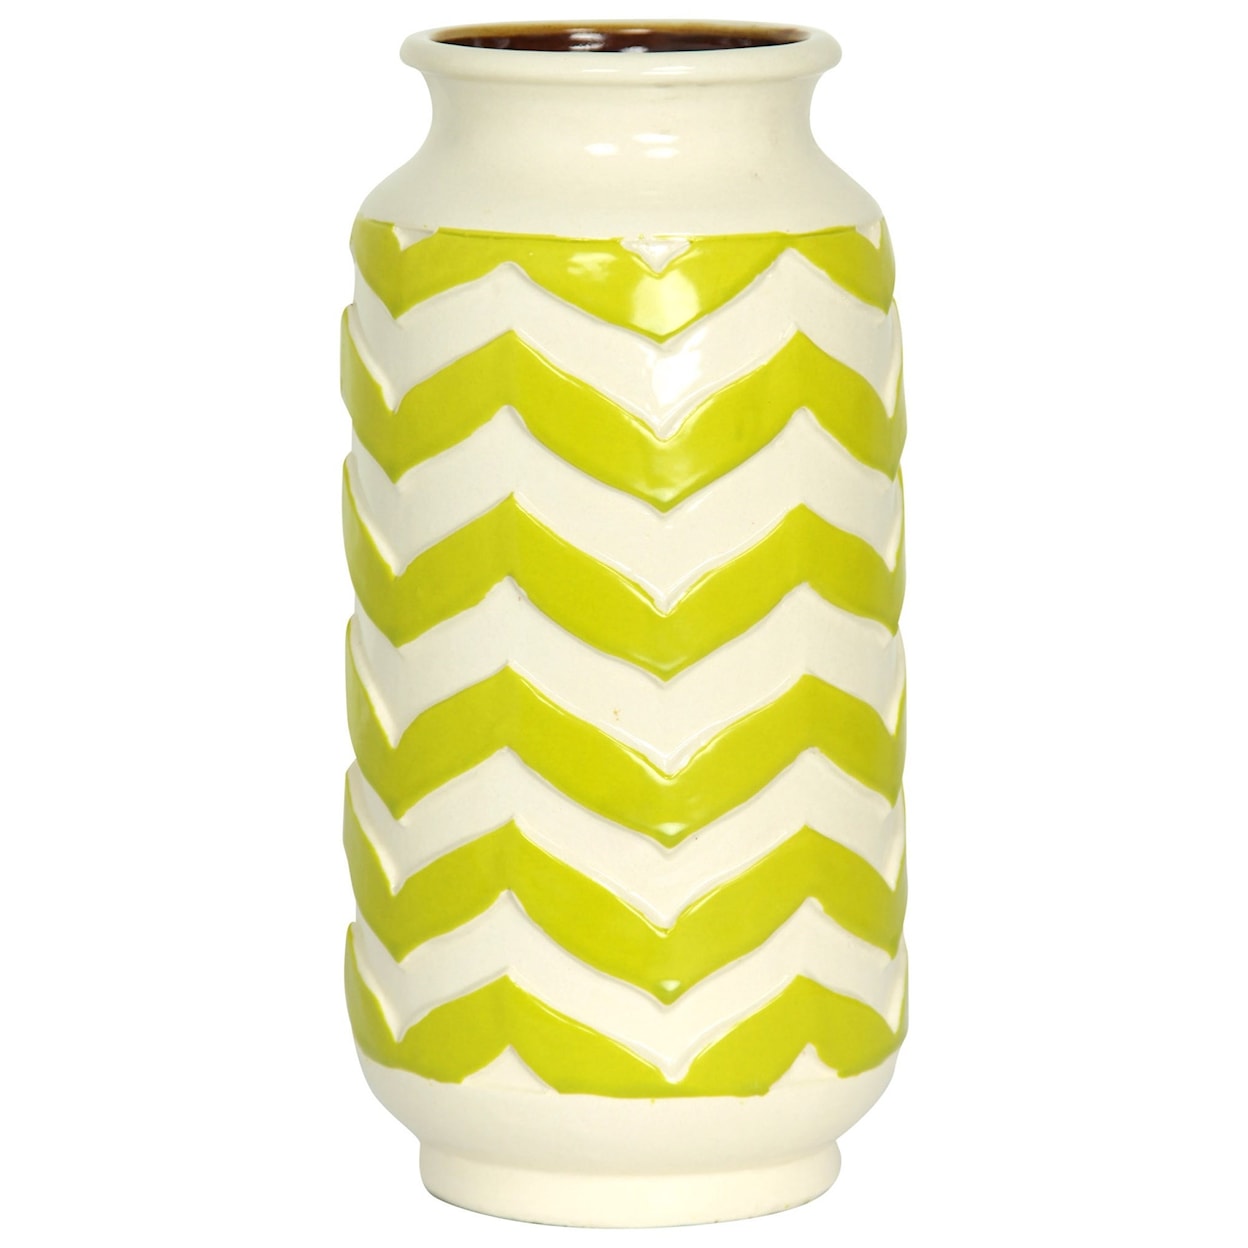 StyleCraft Accessories Chevron Striped Ceramic Vase